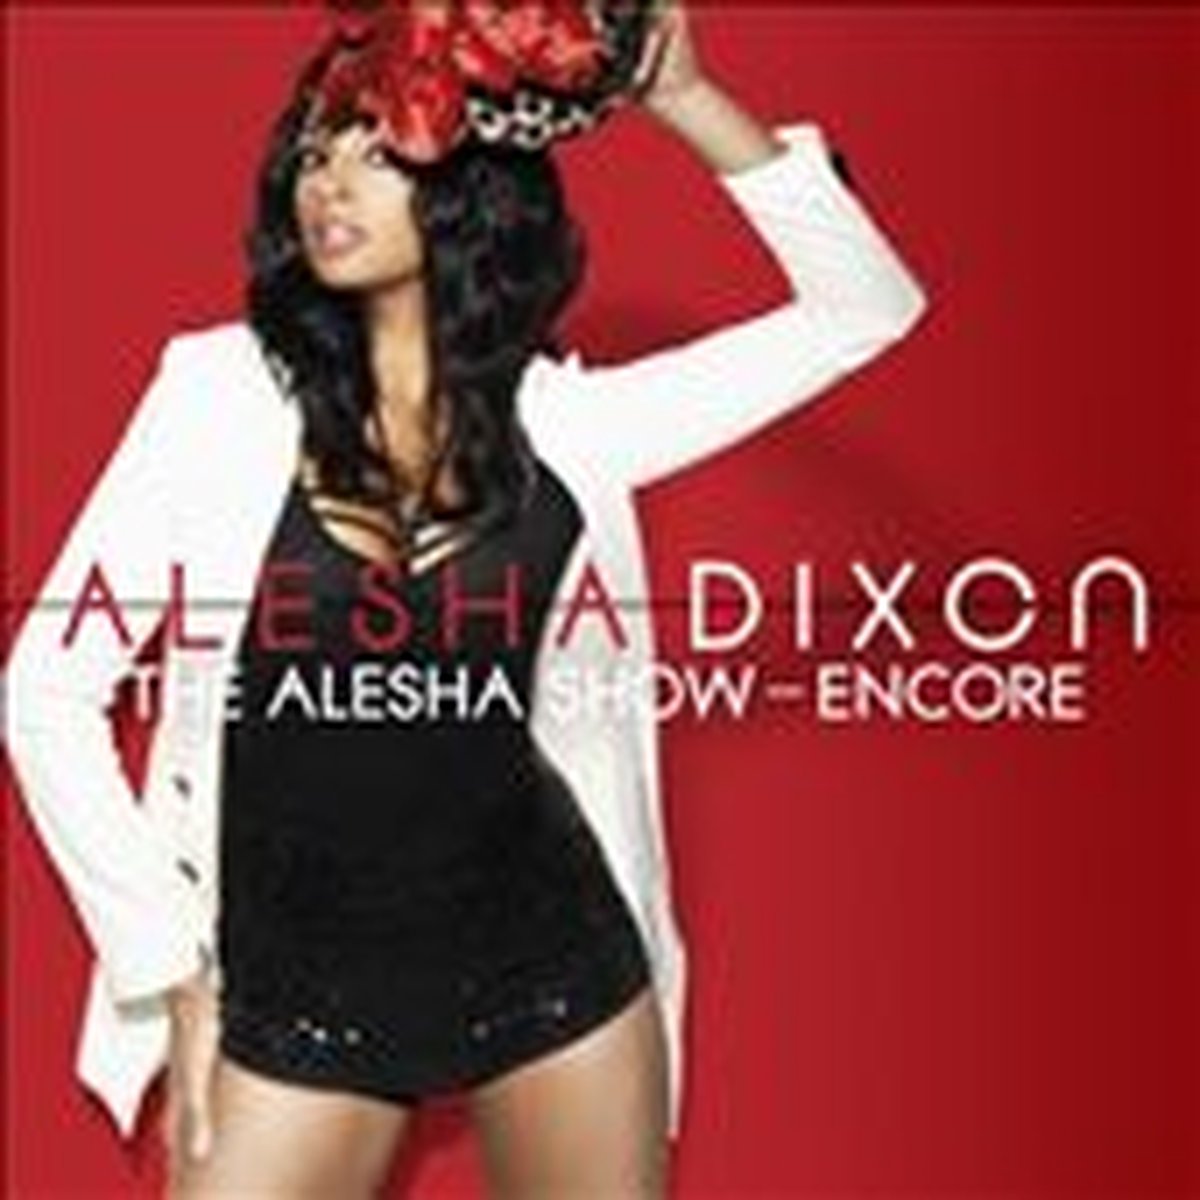 Alesha Show - Alesha Dixon